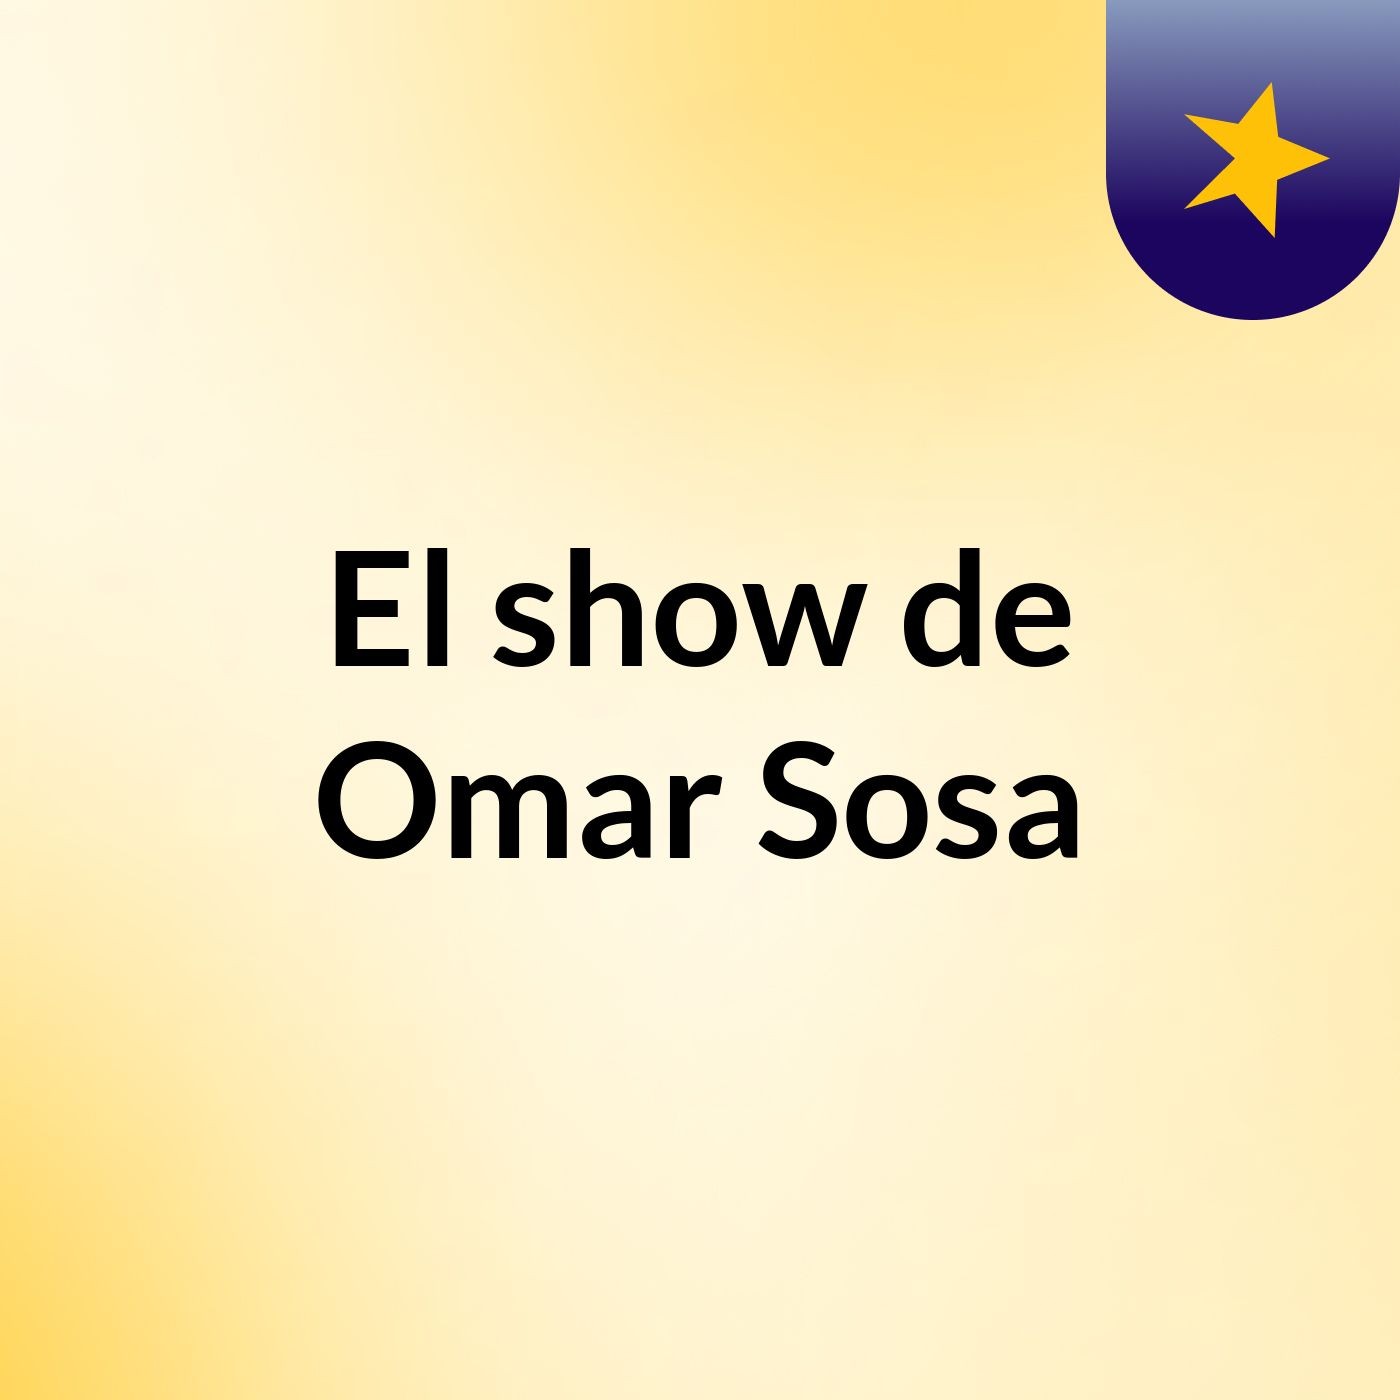 El show de Omar Sosa